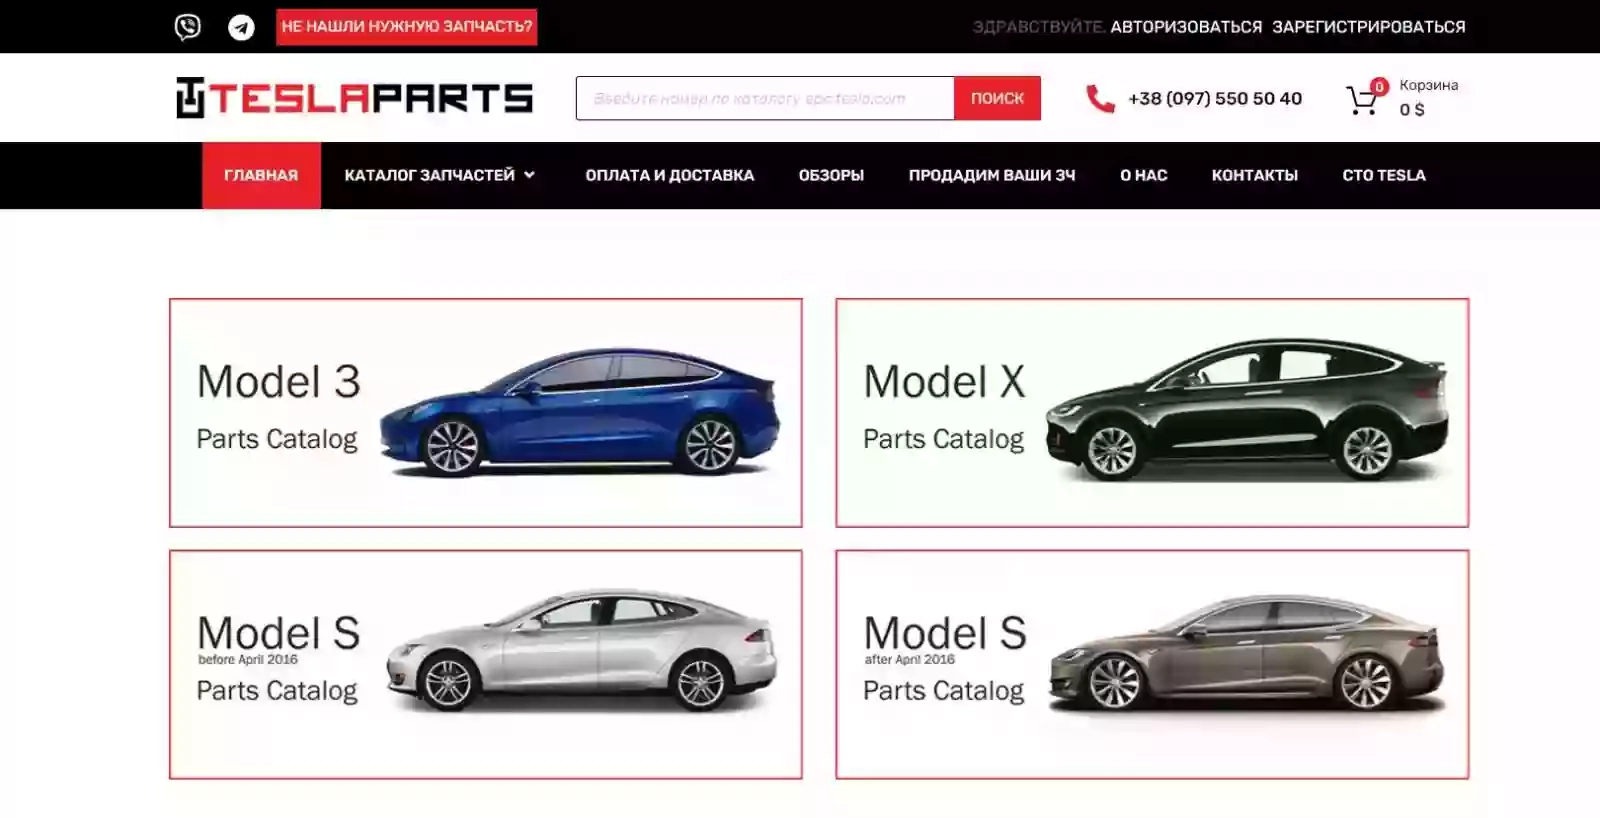 Запчасти Tesla | интернет-магазин teslaparts.com.ua